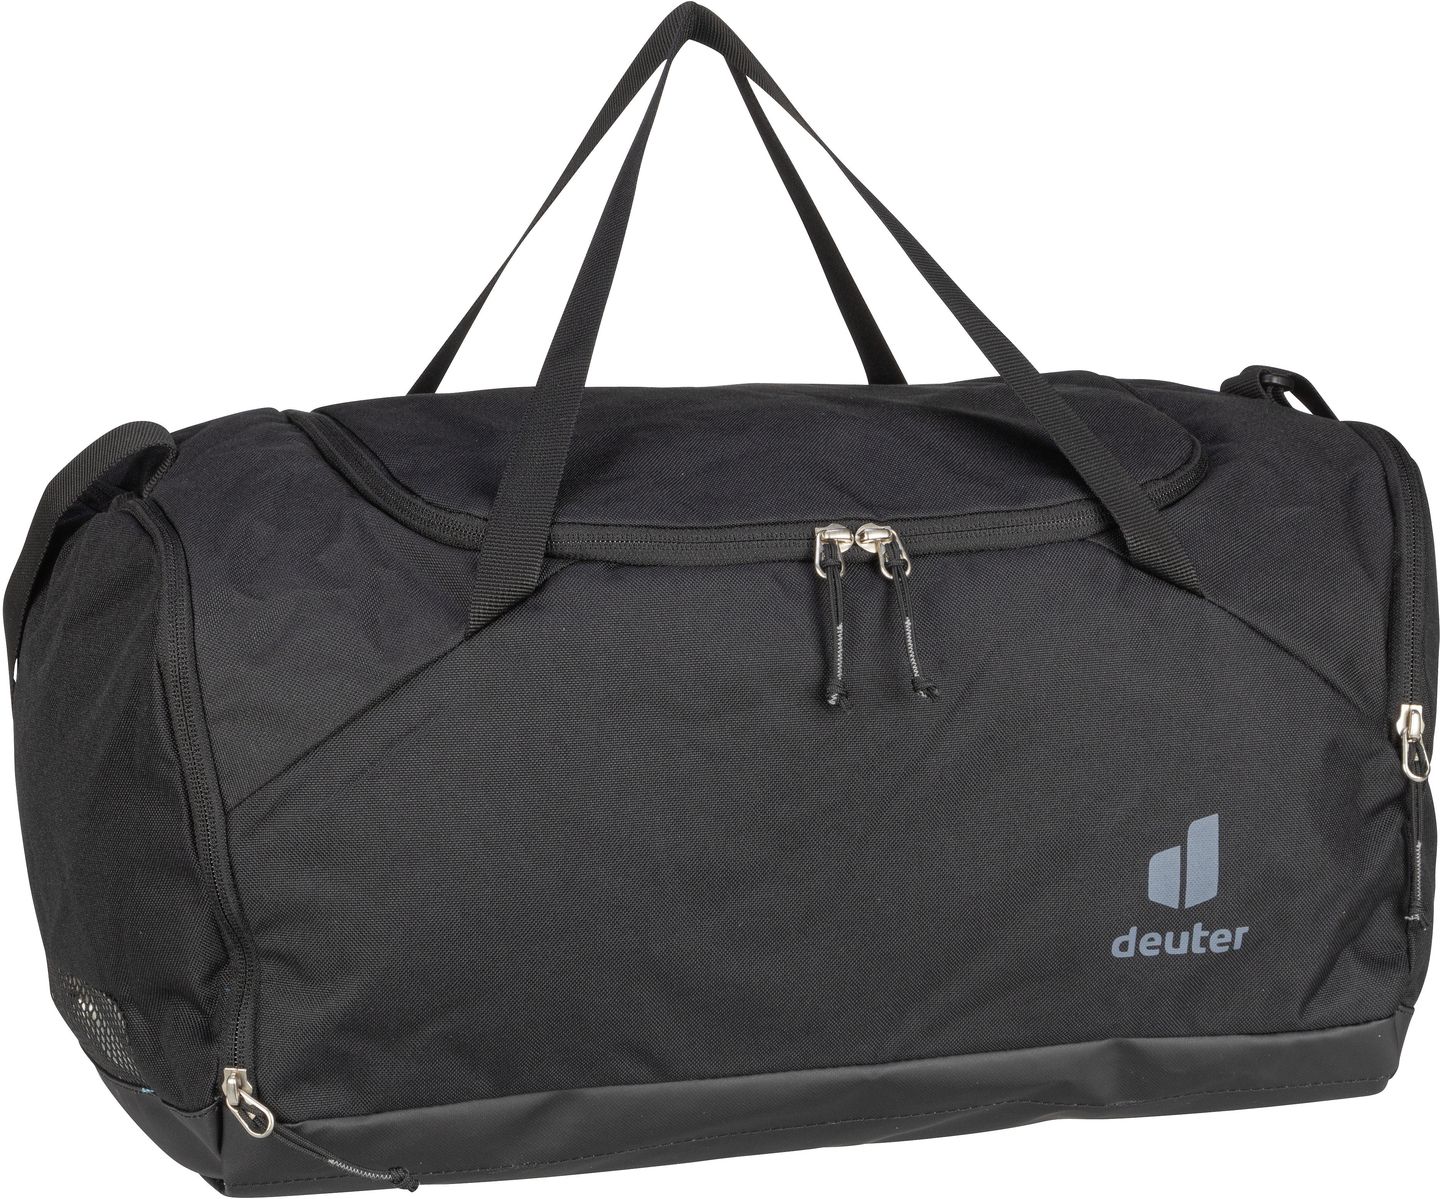 Deuter  Hopper - Duffle Bag - Schwarz (Black)